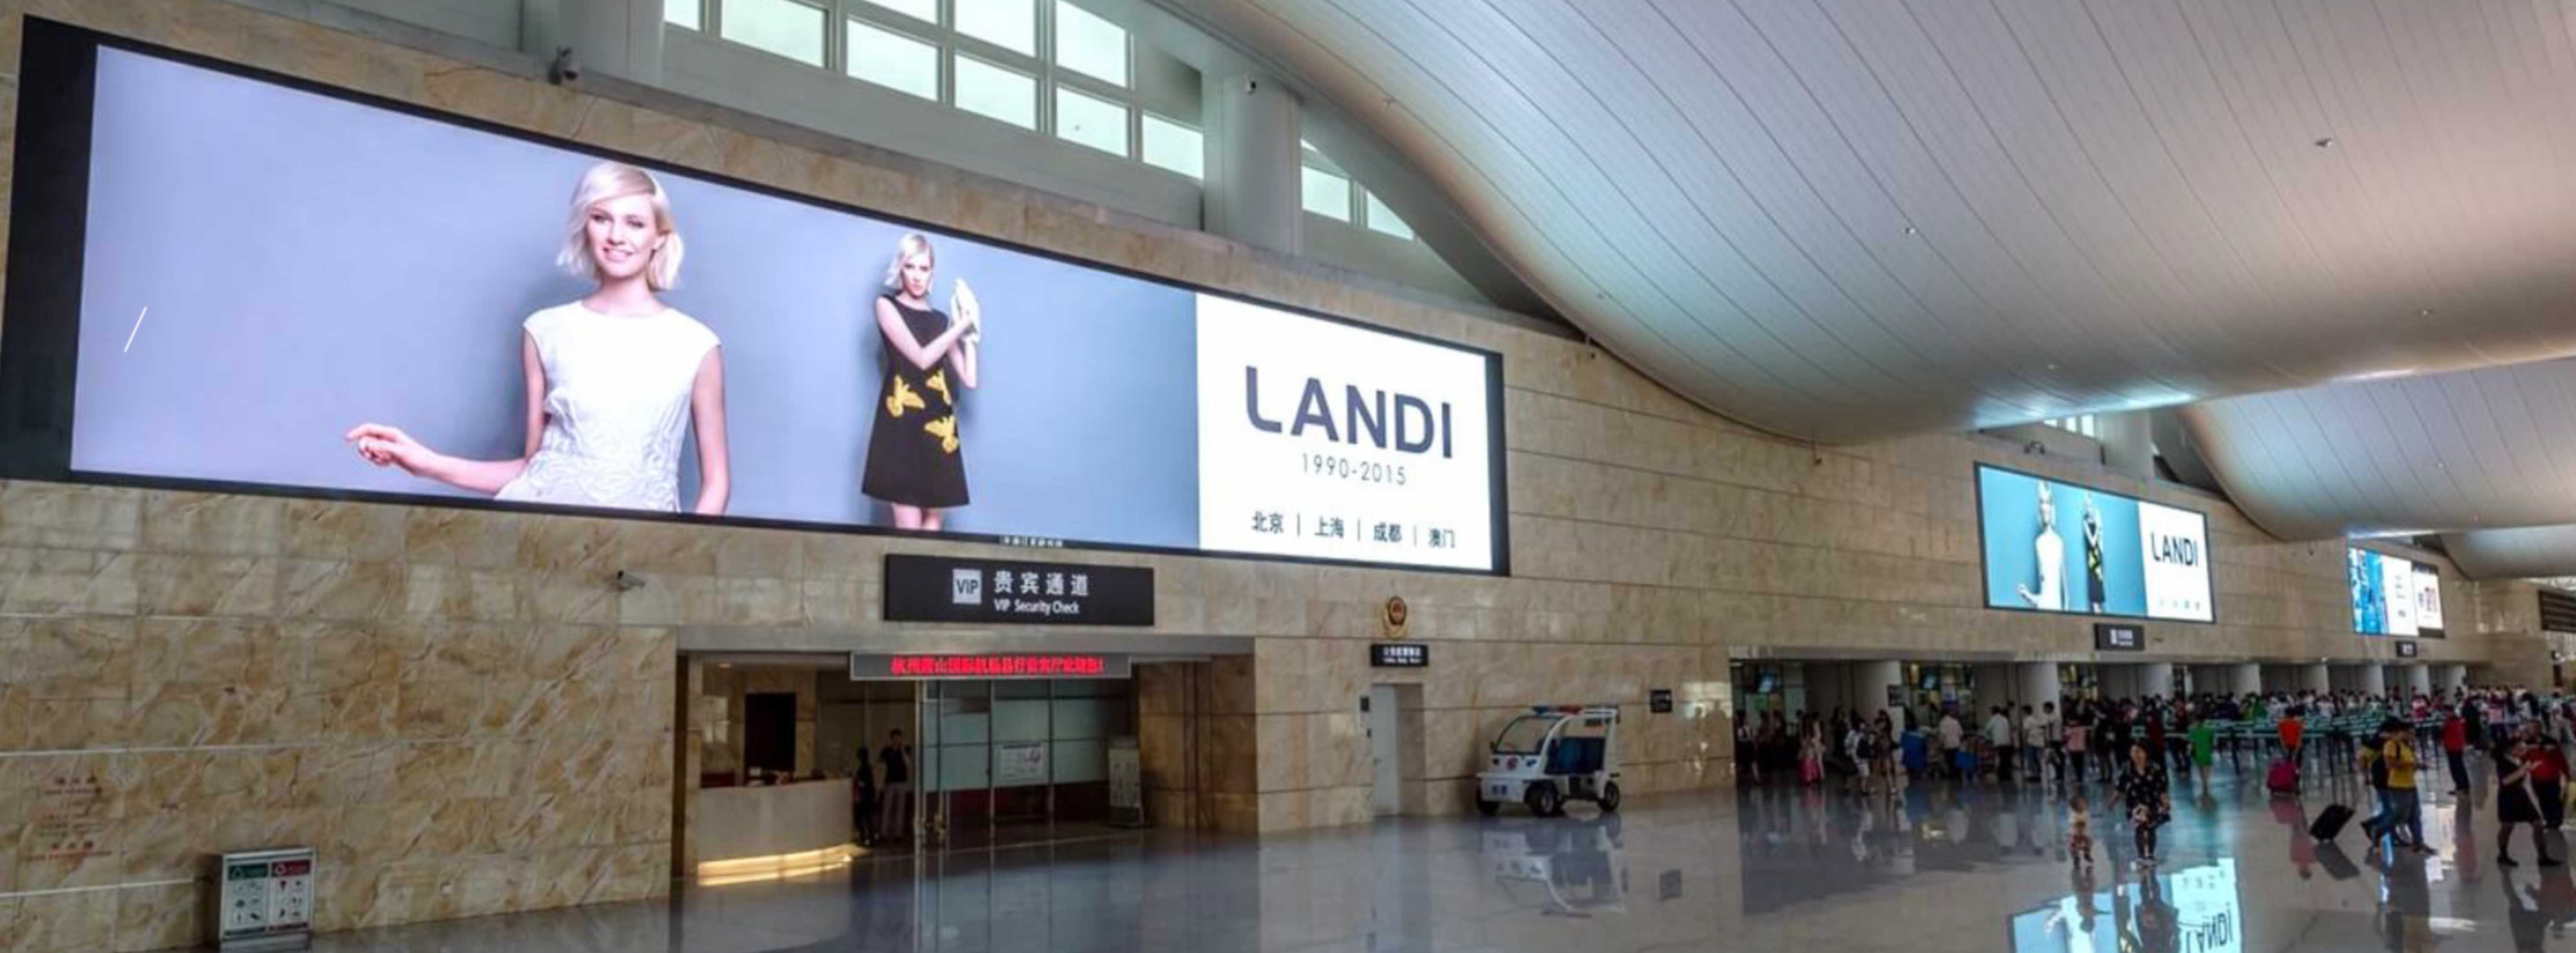 杭州萧山机场广告-T3出发安检上方LED屏